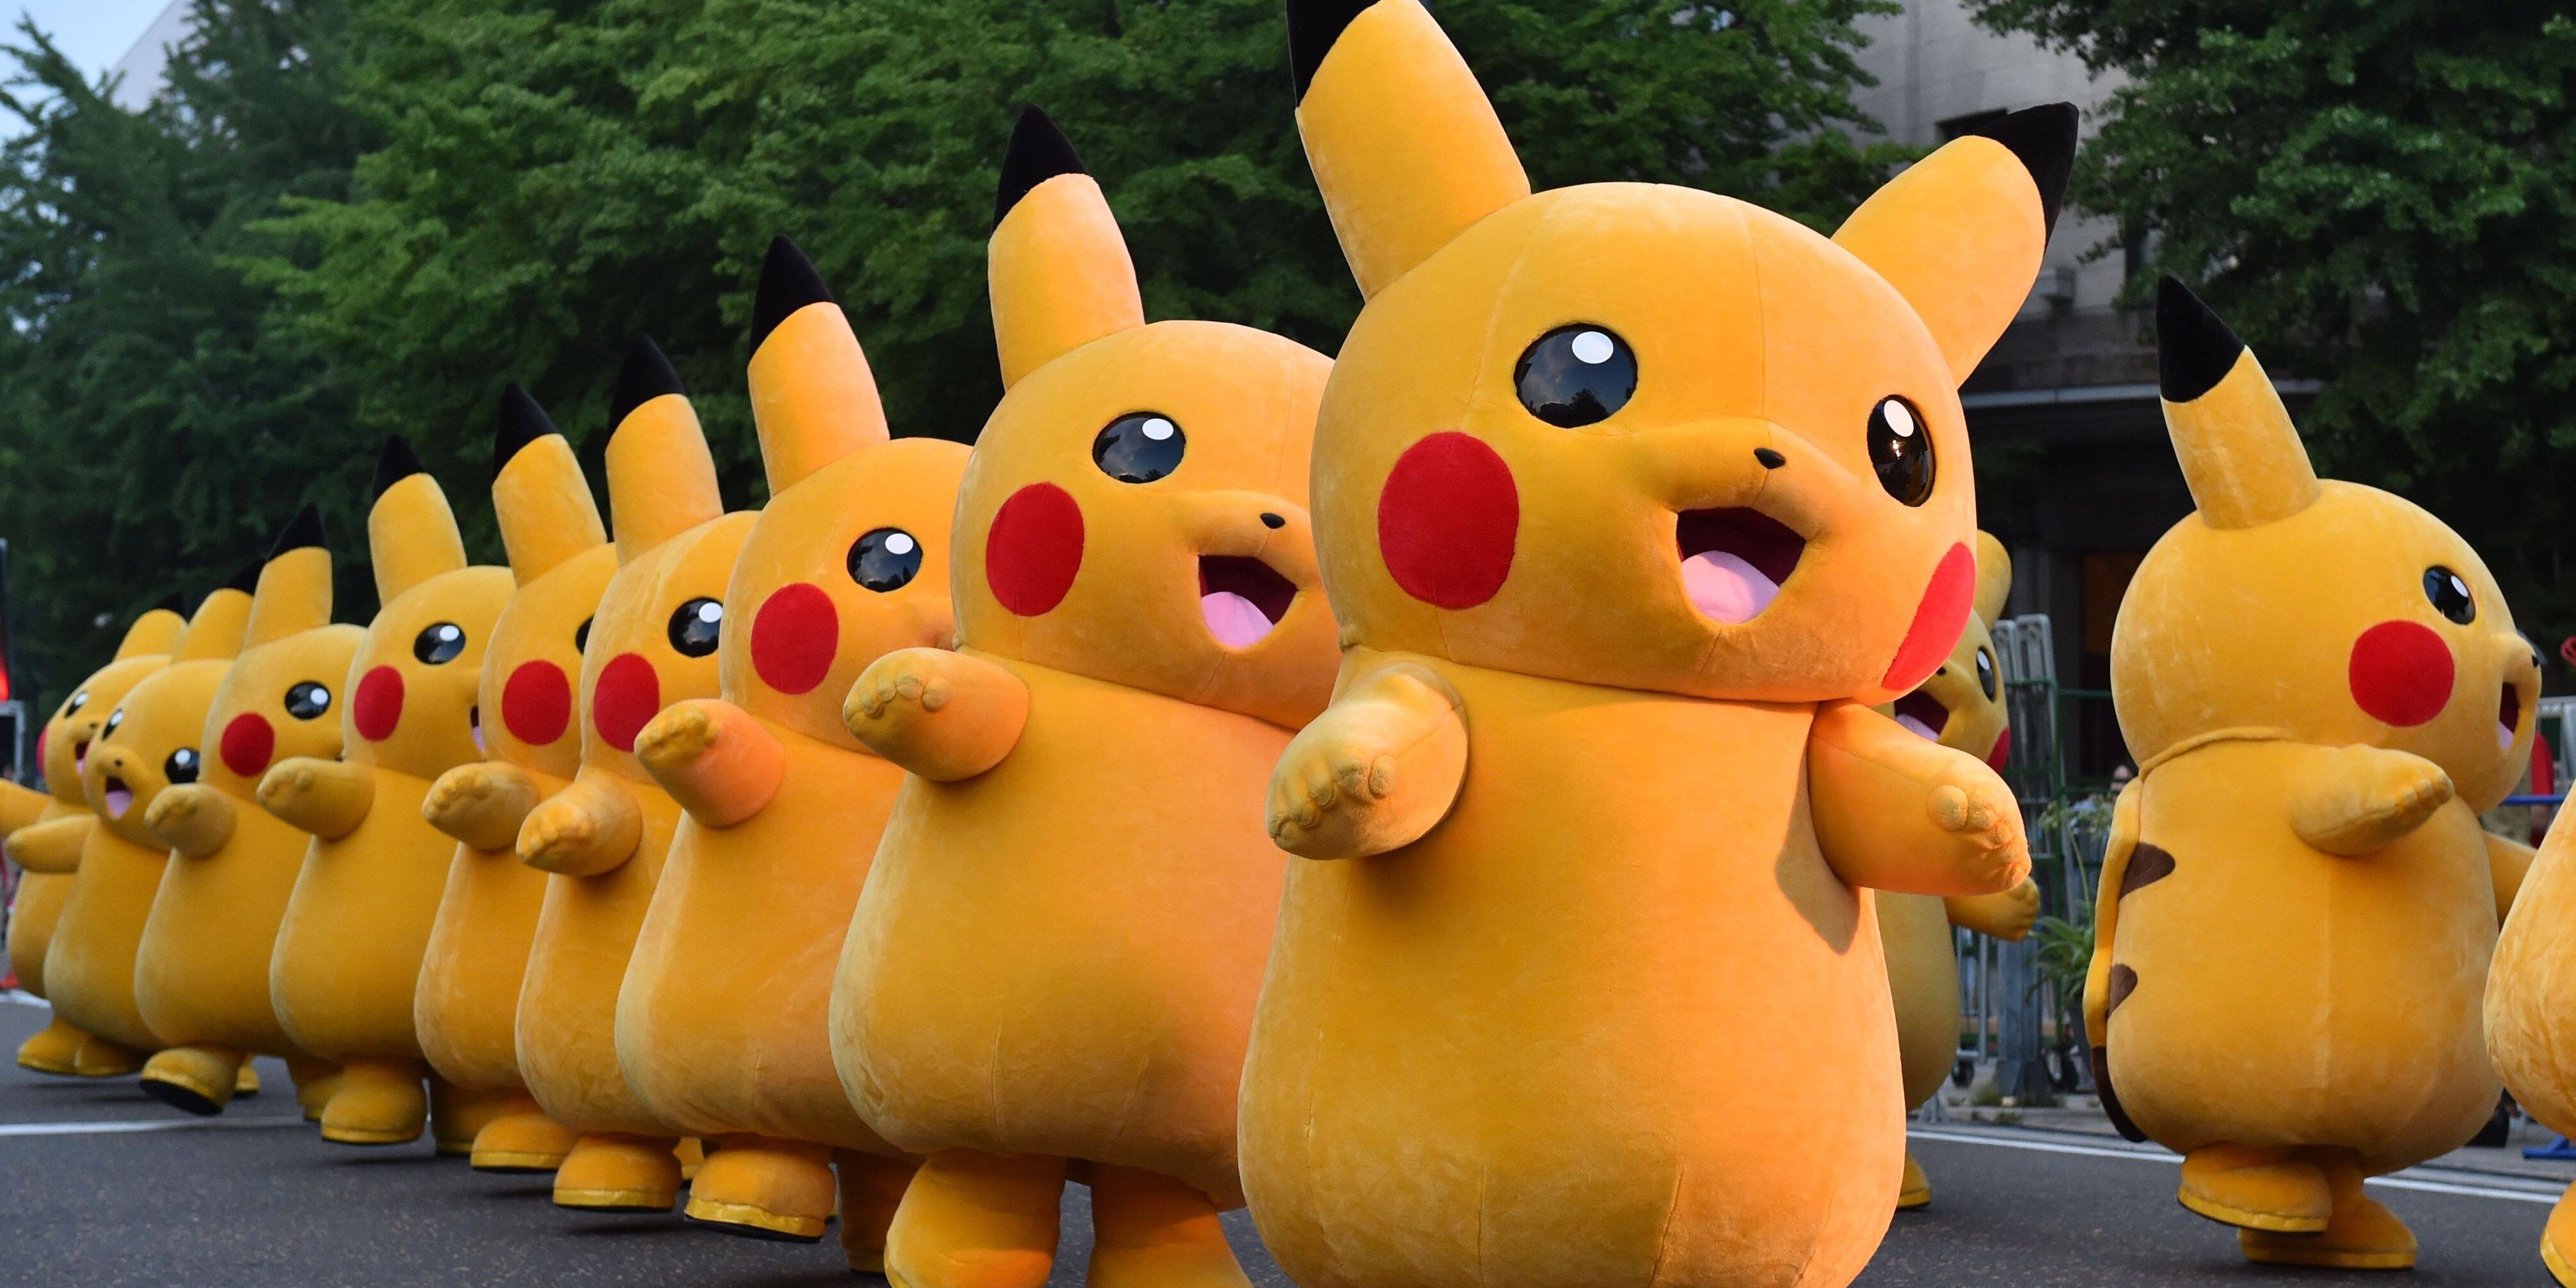 Pokémon Go : voici tous les Pokémon que vous pourrez capturer lors de la  Saint-Valentin